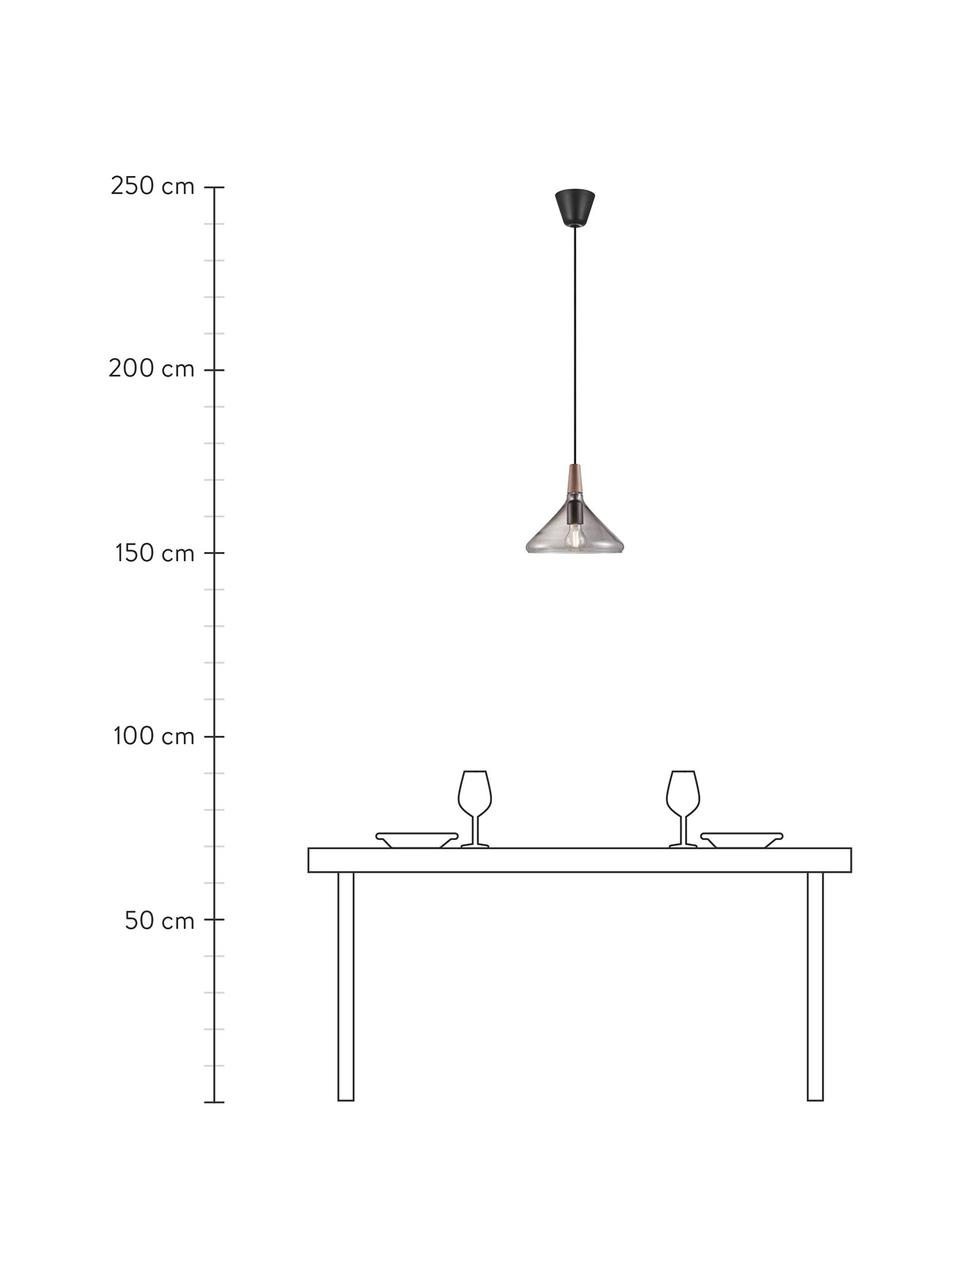 Lámpara de techo pequeña Caxixi, Pantalla: vidrio, Anclaje: metal recubierto, Cable: cubierto en tela, Gris transparente, Ø 27 x Al 25 cm